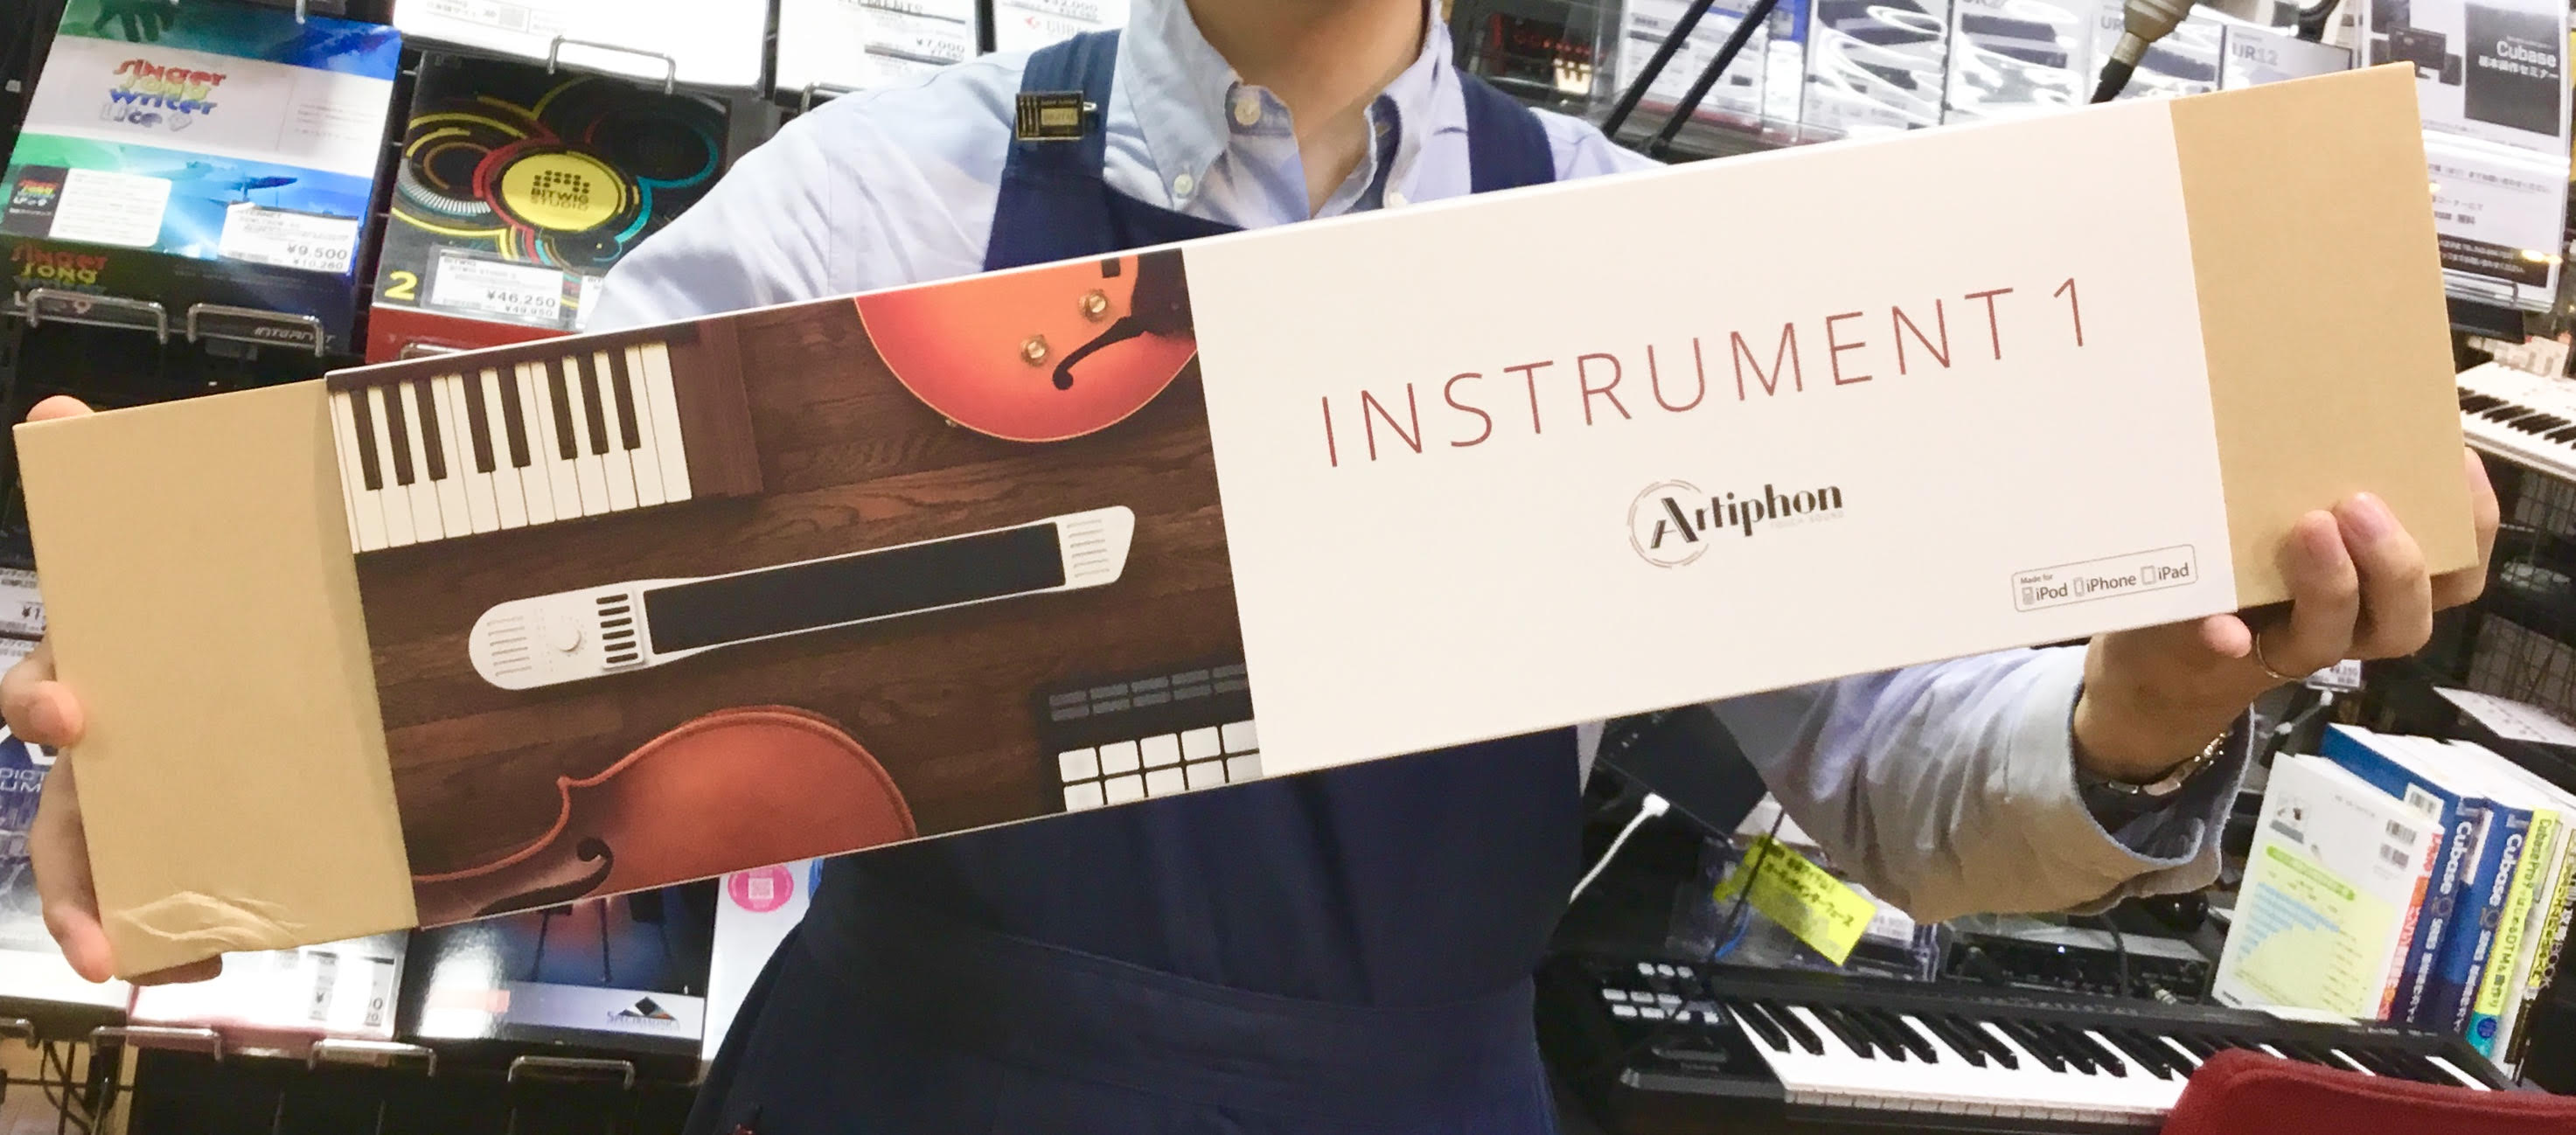 *様々な奏法が可能なギター型MIDIコントローラー Artiphonの新製品INSTRUMENT 1が当店にも入荷しました！ 店頭では実際にお試しいただけます。 ぜひお気軽にご来店ください！ |*ブランド|*型名|*販売価格(税込)| |Artiphon|INSTRUMENT 1 (White)|[ […]